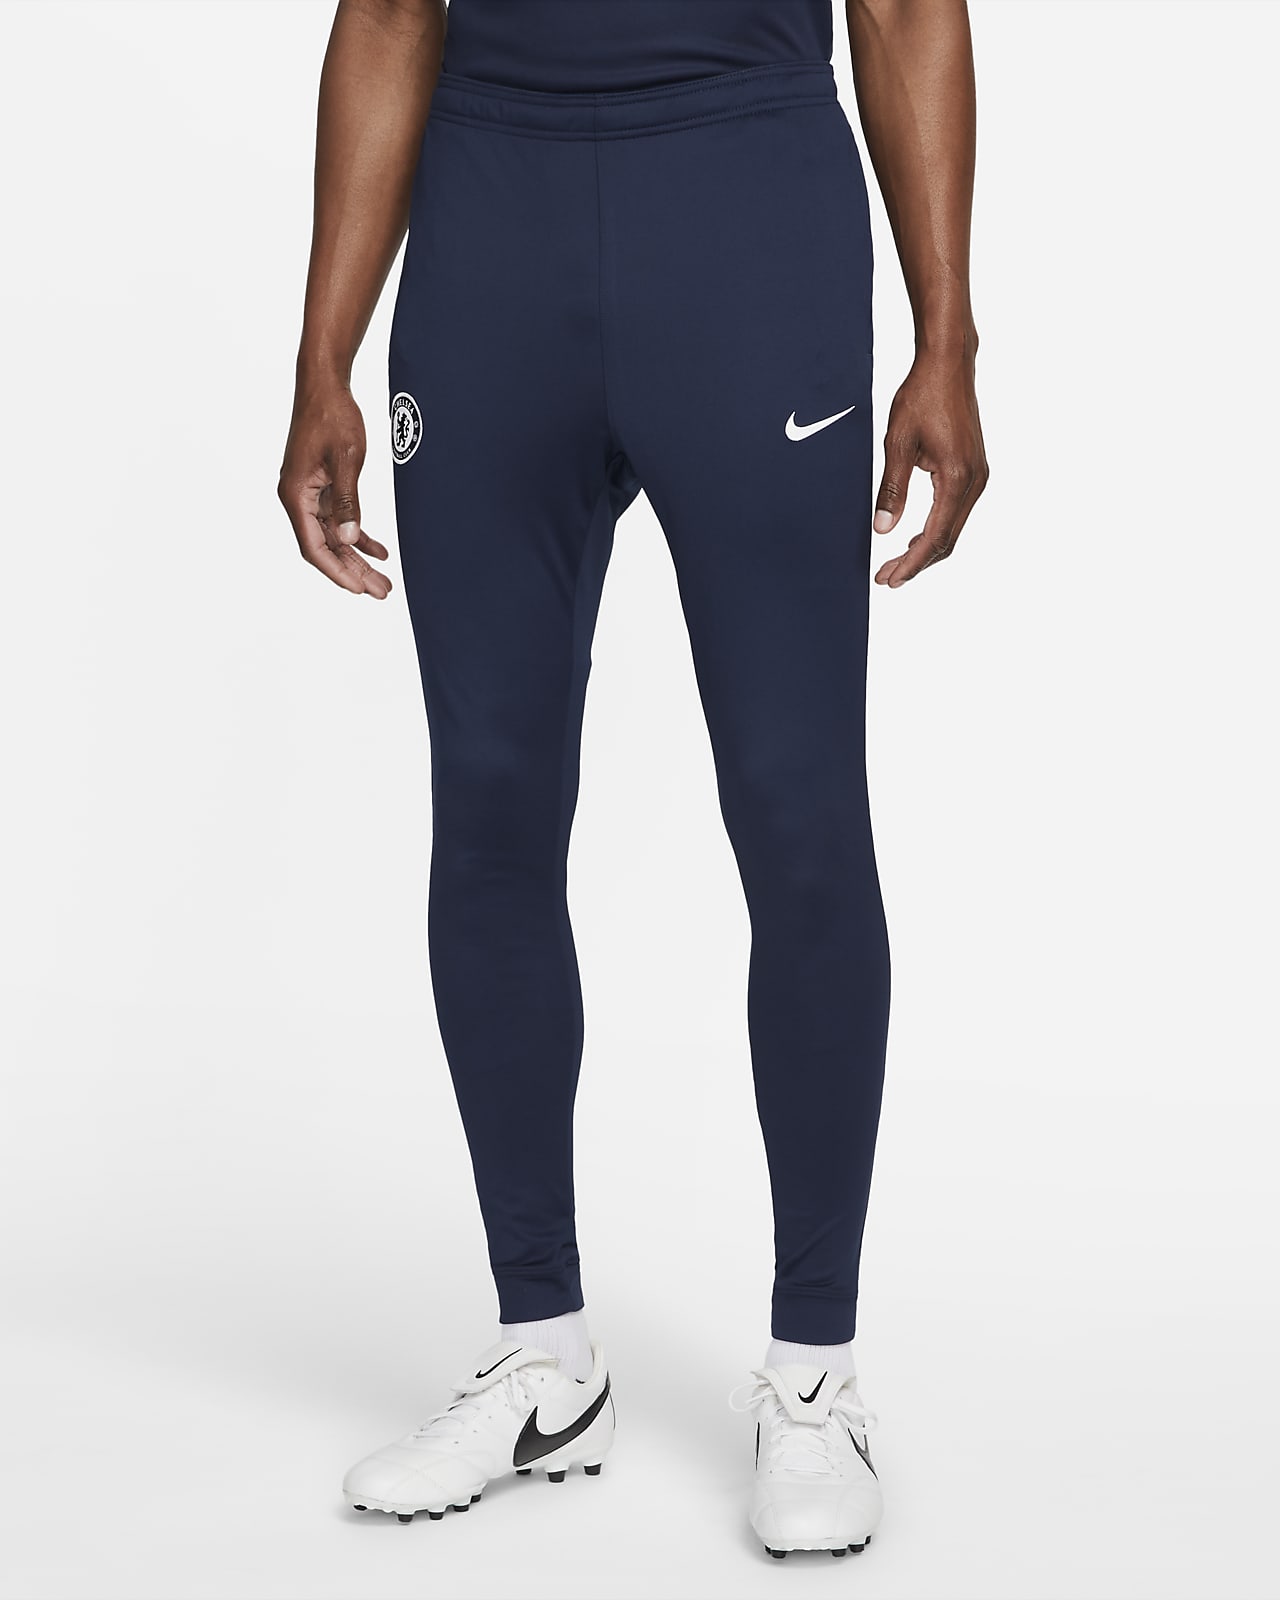 Chelsea FC Pantalón deportivo de fútbol de tejido Knit Nike - Hombre. ES